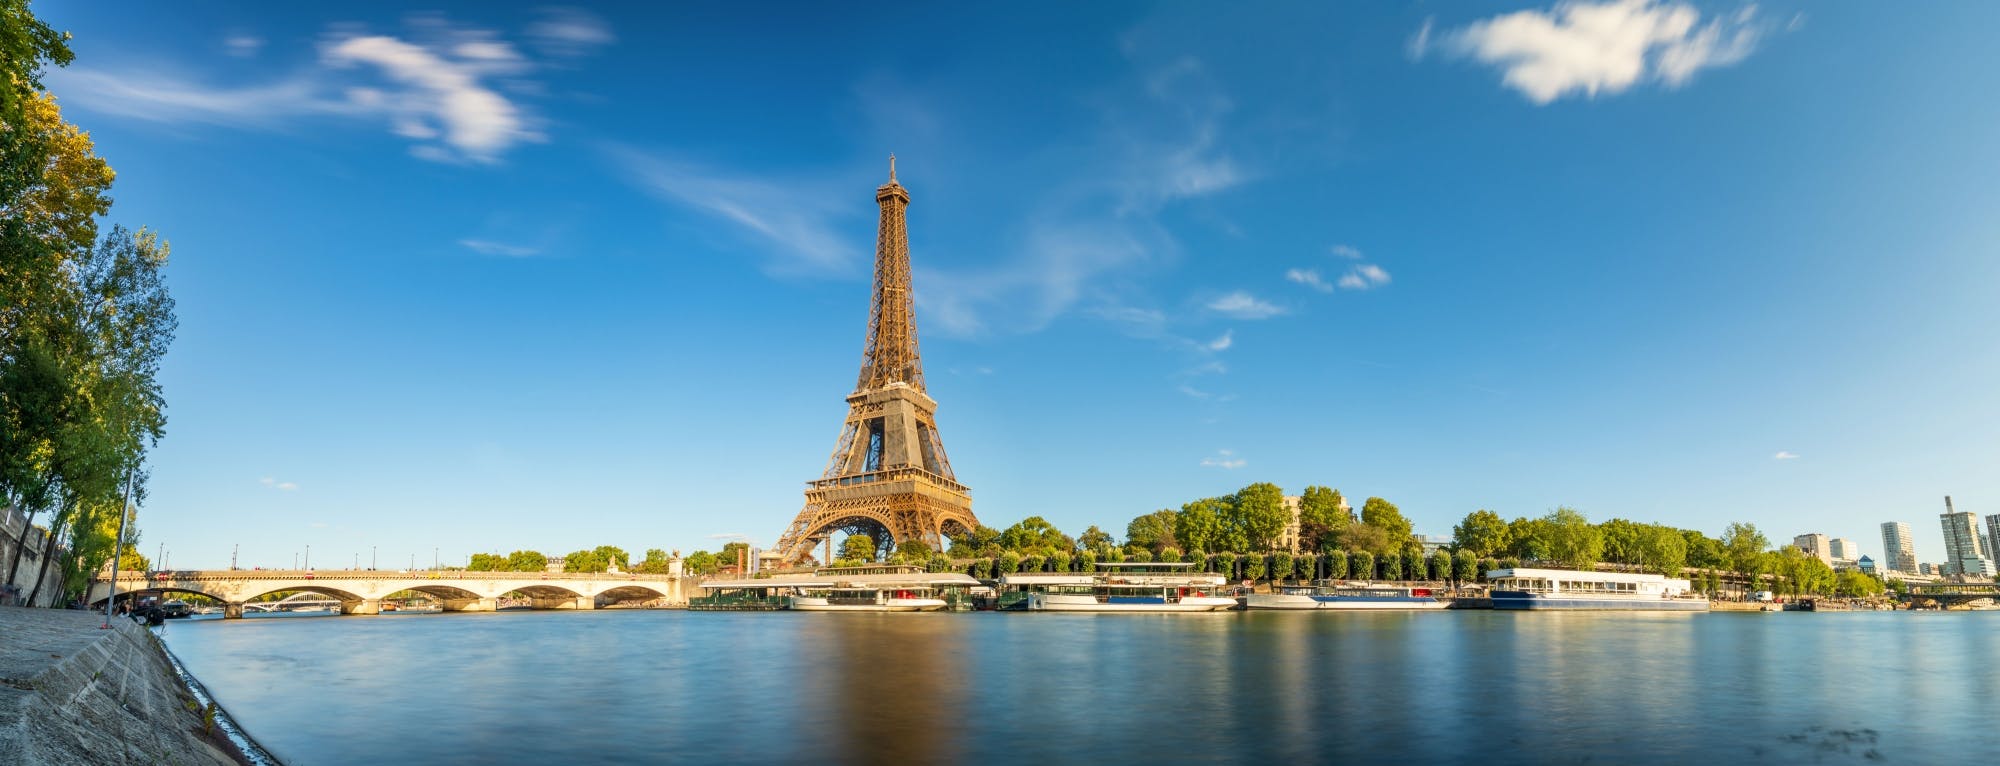 Paris insider's tour with Seine sightseeing cruise